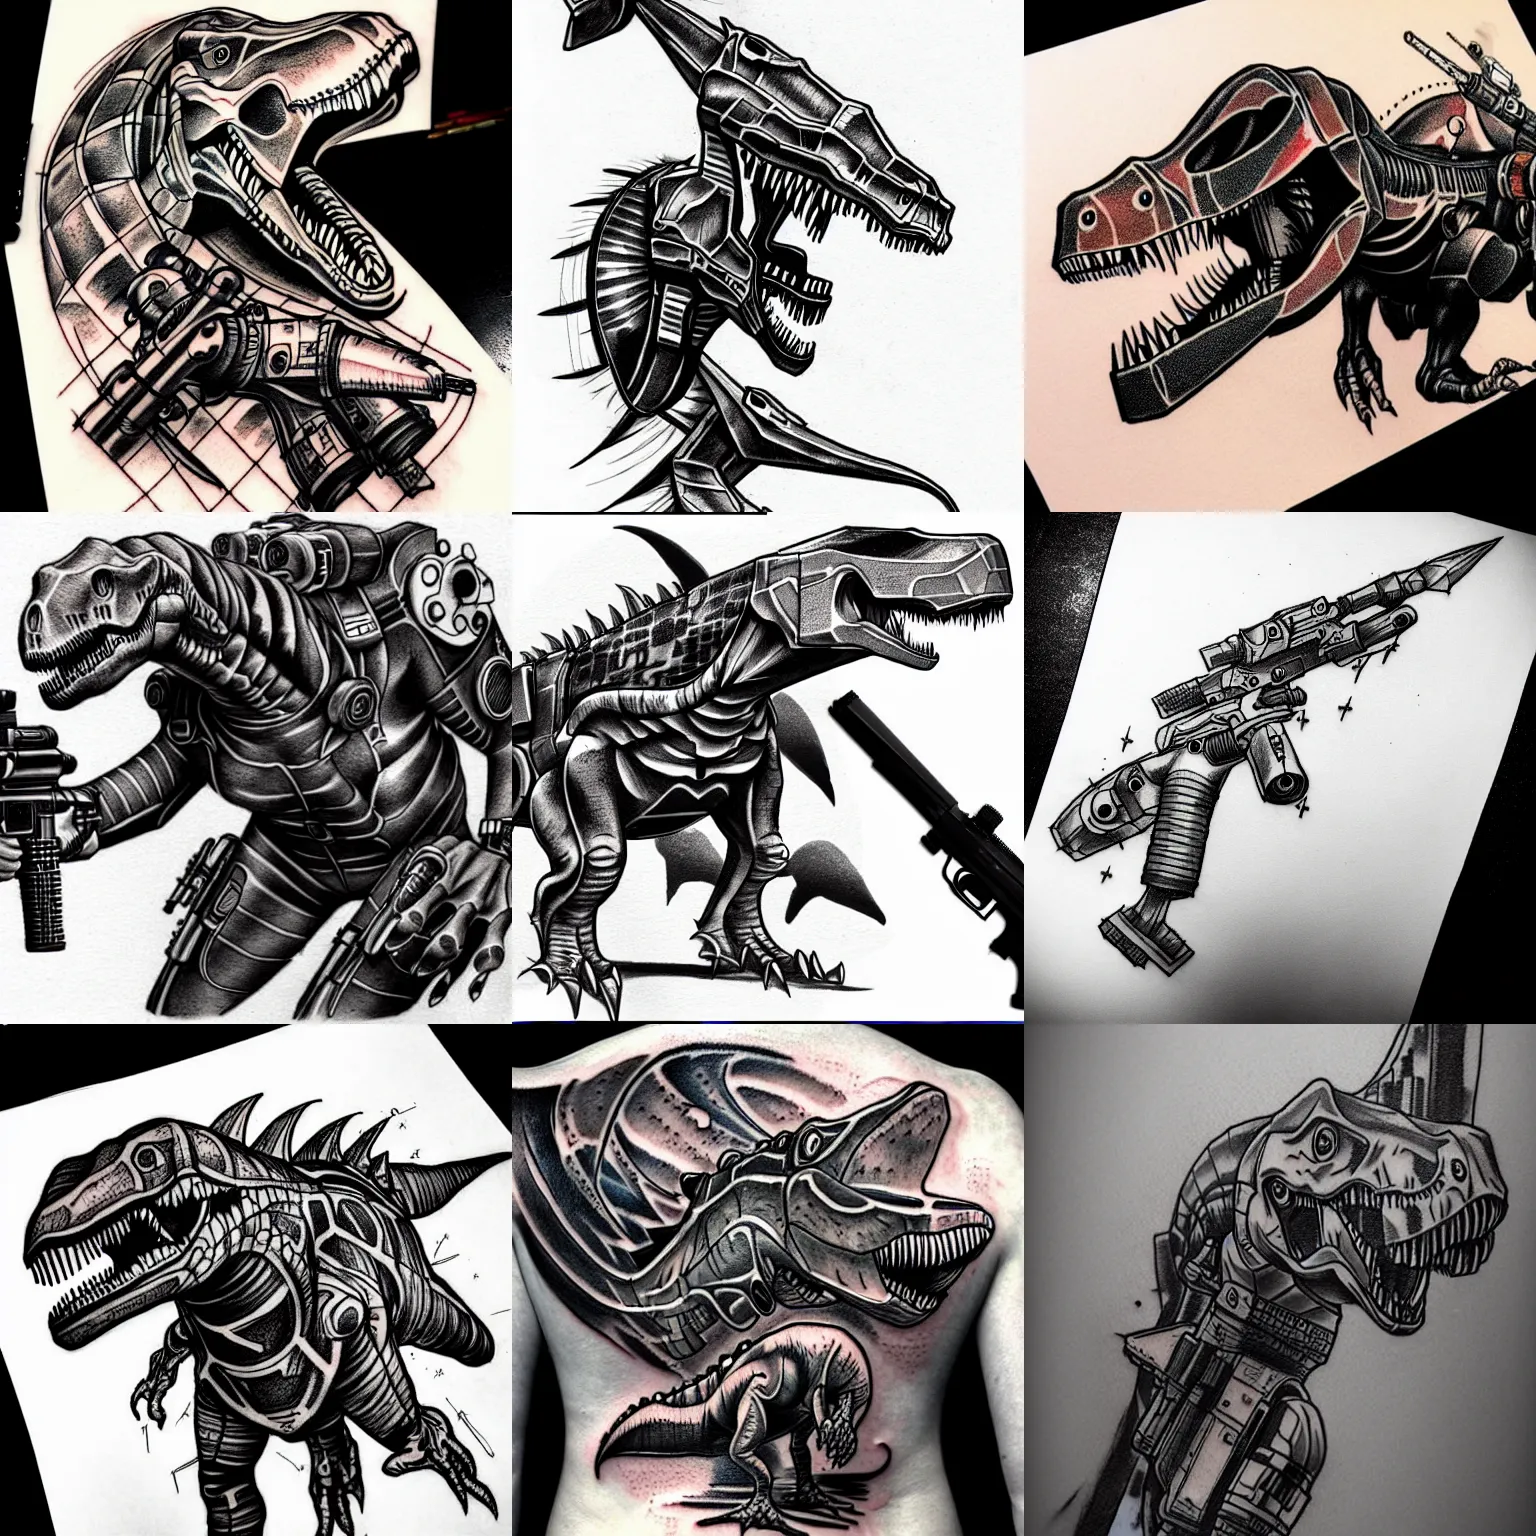 Prompt: tattoo sketch dinosaur with blaster gun sci - fi, futuristic, high detailed, cyberpunk